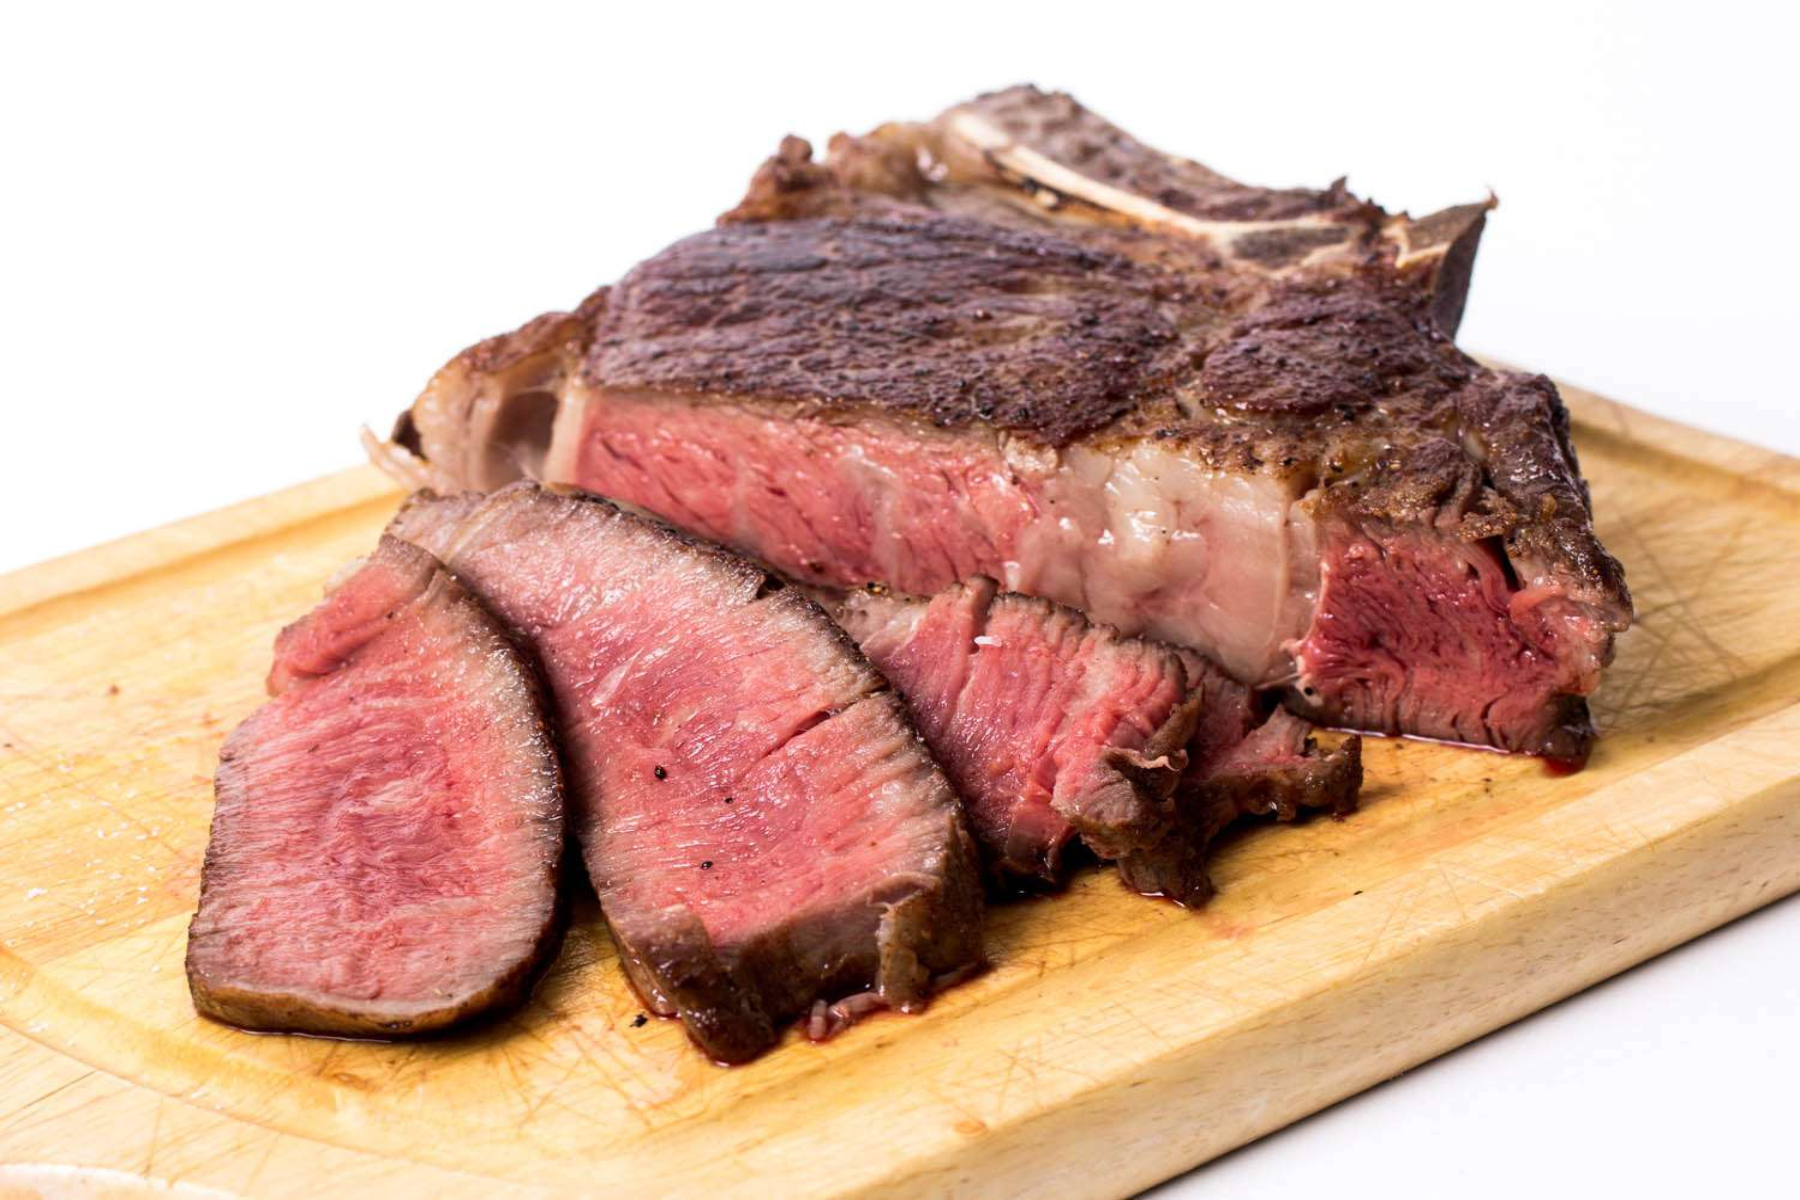 Κρέας: Ποια κρέατα αποτελούν το κύριο συστατικό της διατροφής μας;